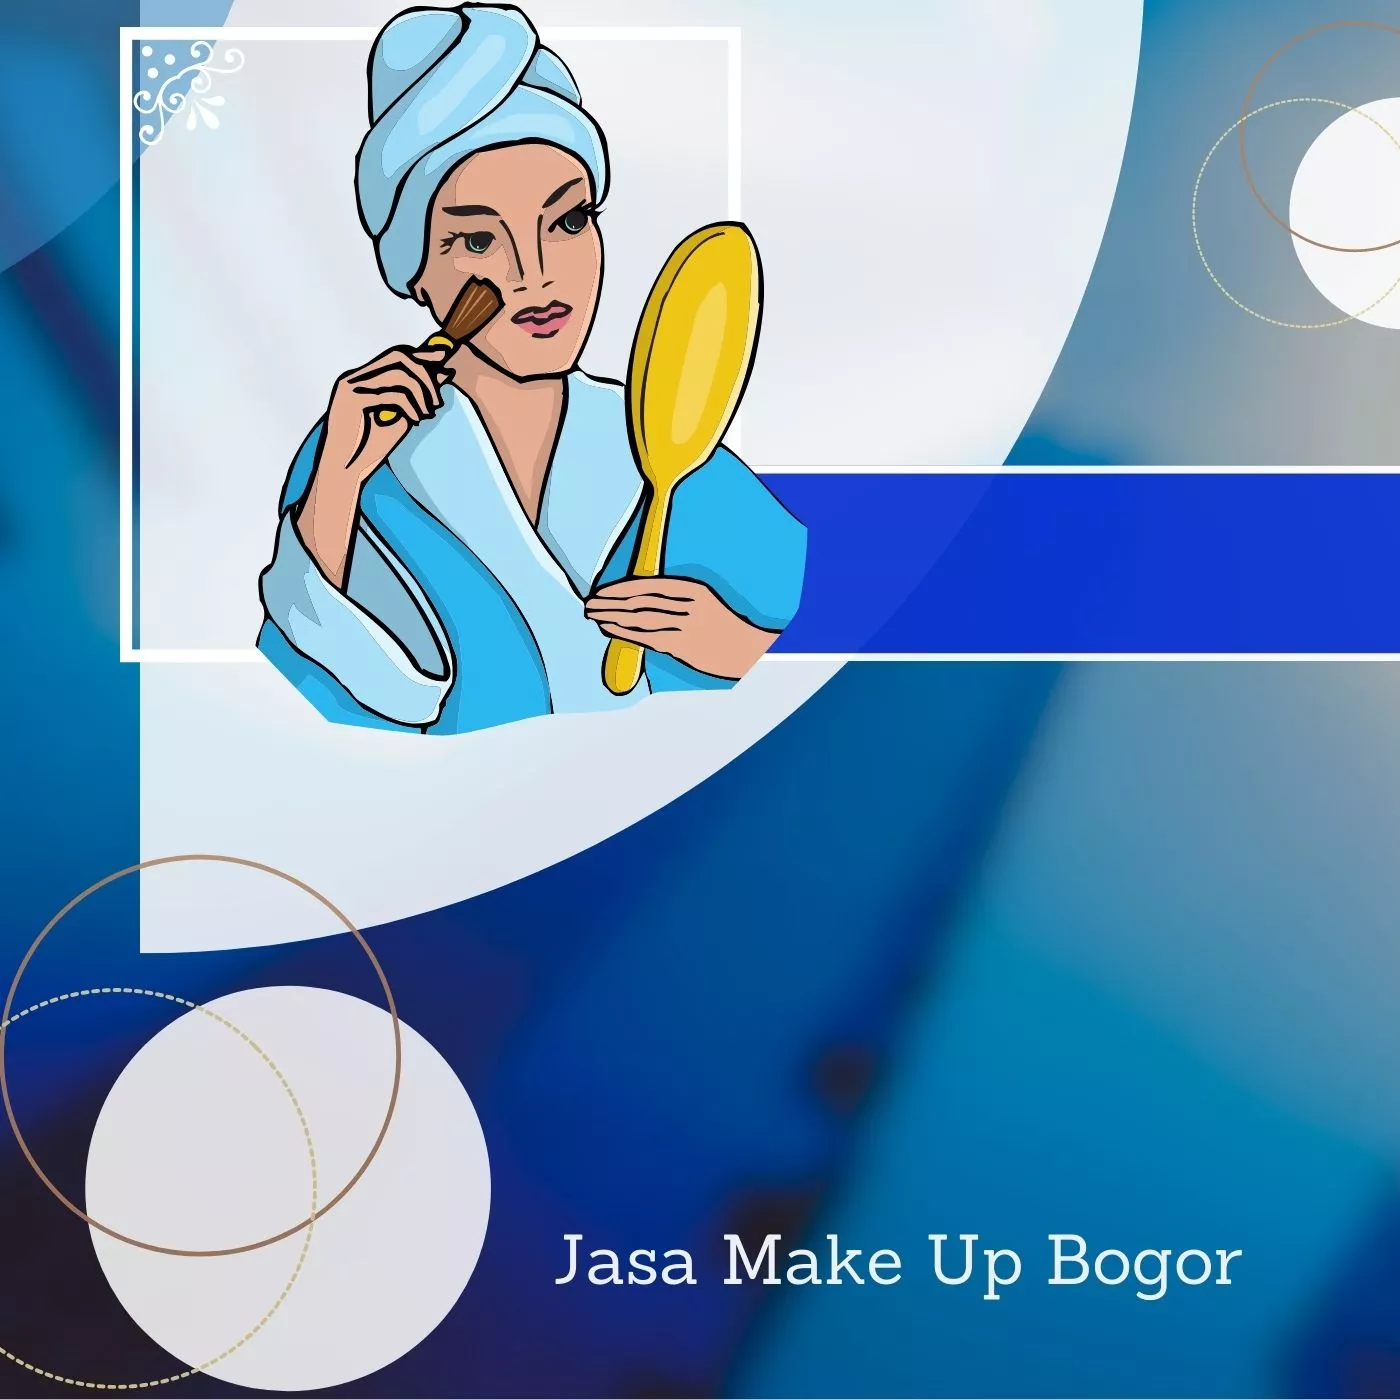 Jasa Make Up Bogor